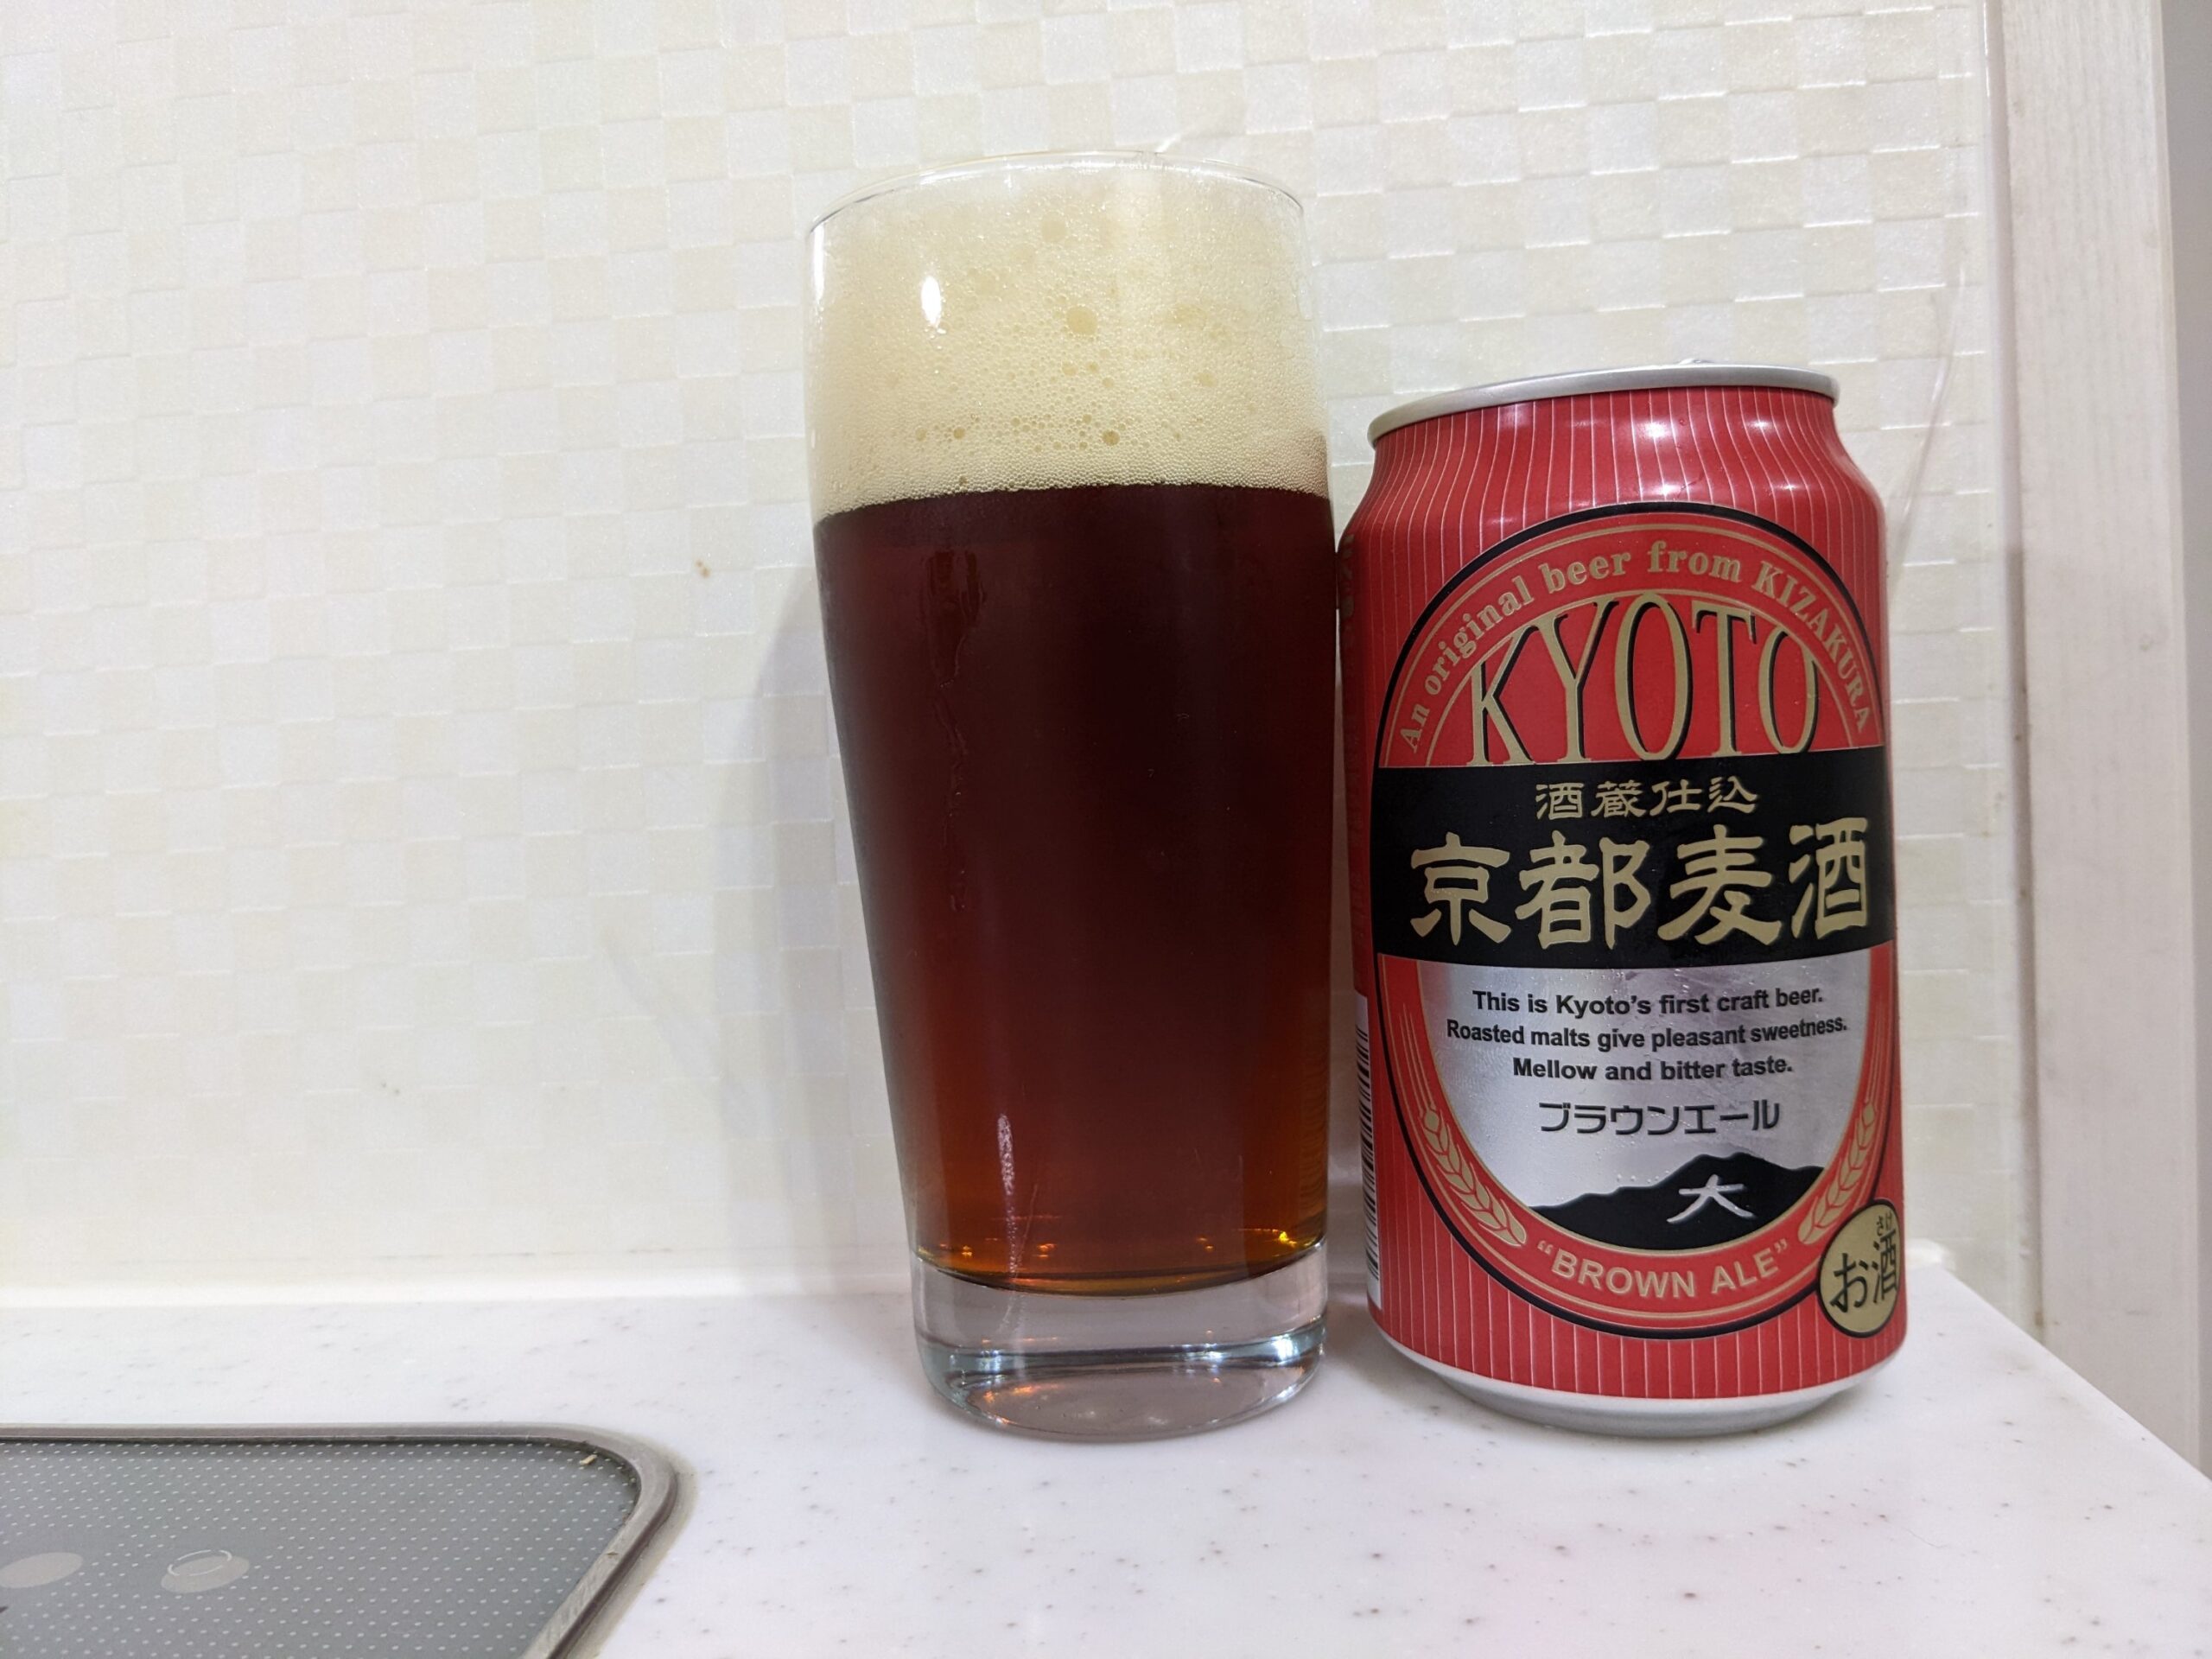 「京都麦酒ブラウンエール 」が注がれたグラスとその缶